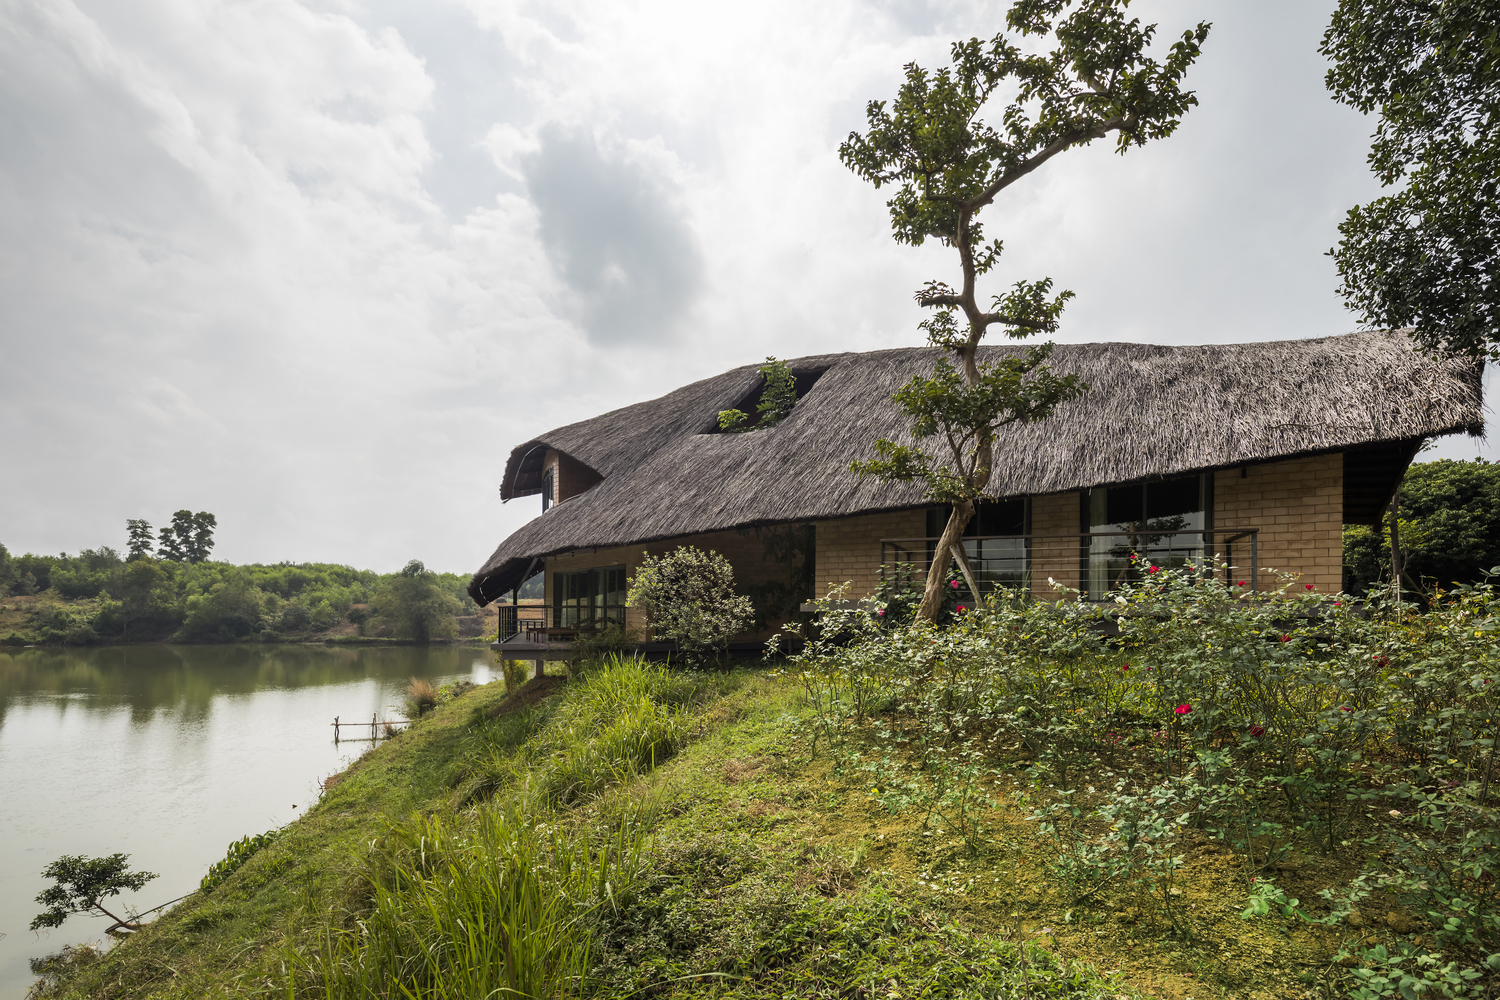 Ngôi nhà view nhìn ra hồ nước tuyệt đẹp, kiến trúc gợi hình ảnh làng quê Việt tại ngoại thành Hà Nội - Ảnh 5